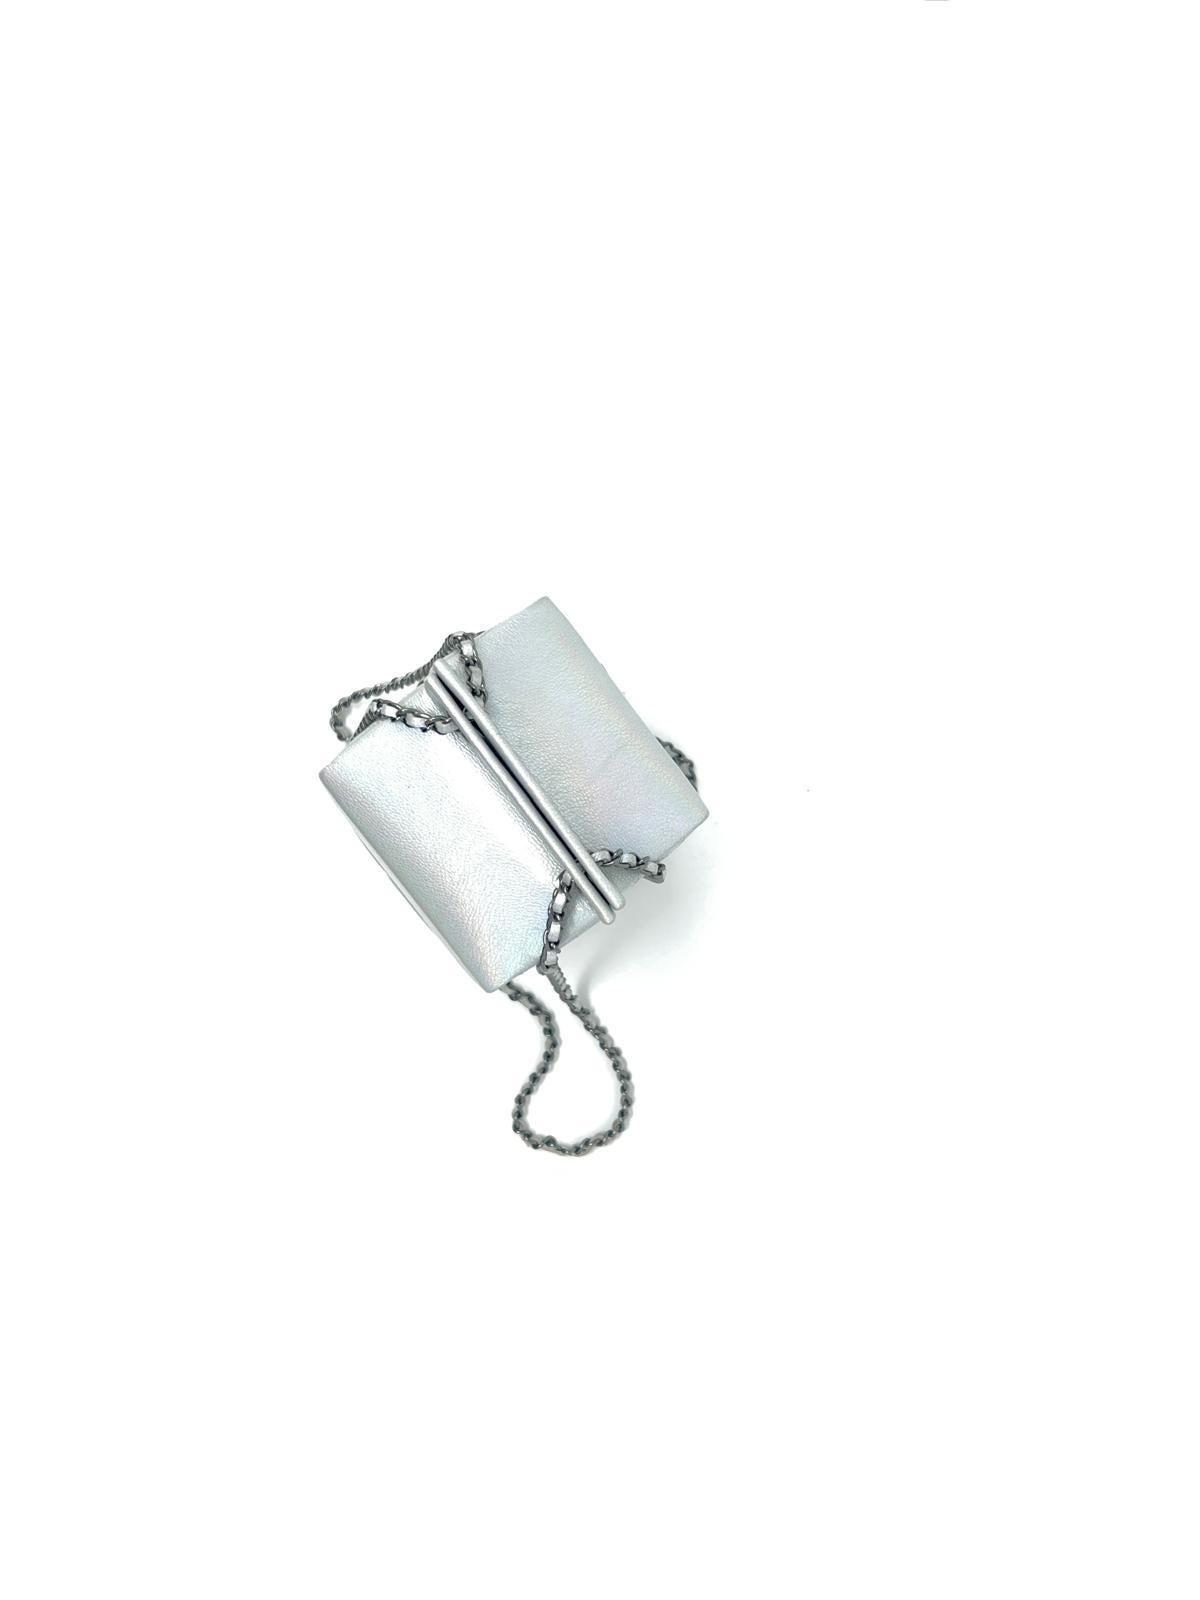 Chanel Iridescent Lait de Coco Milk Carton Bag Ruthenium Hardware 2014 For Sale 3